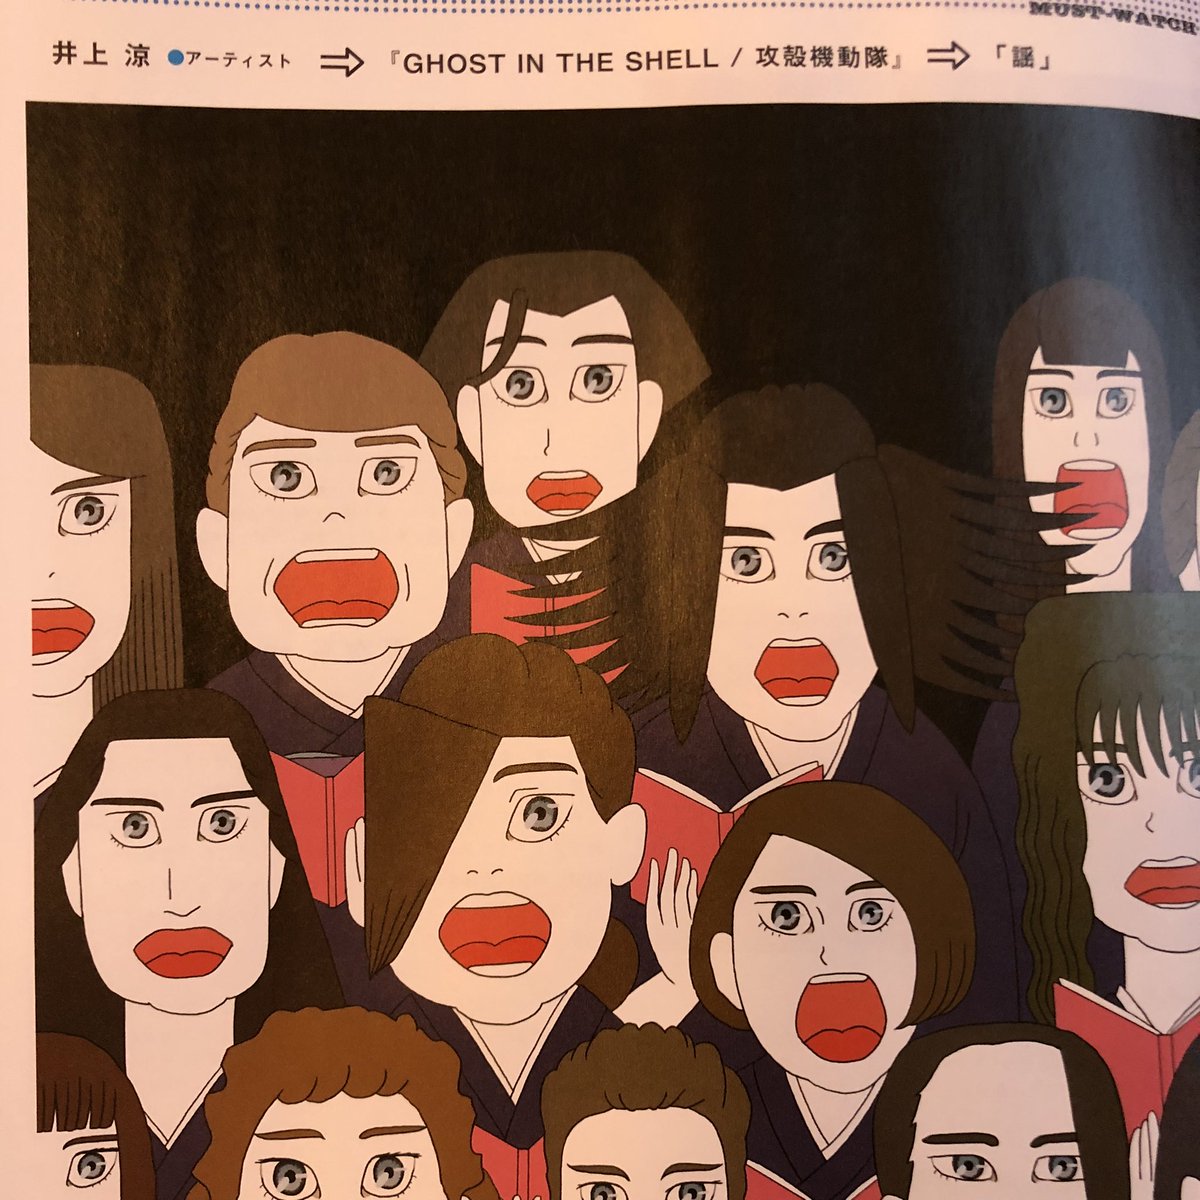 「あした11月1日発売の雑誌BRUTUS「何度でも観たい映画。」特集、日本アニメ映」|井上涼　INOUE Ryoのイラスト